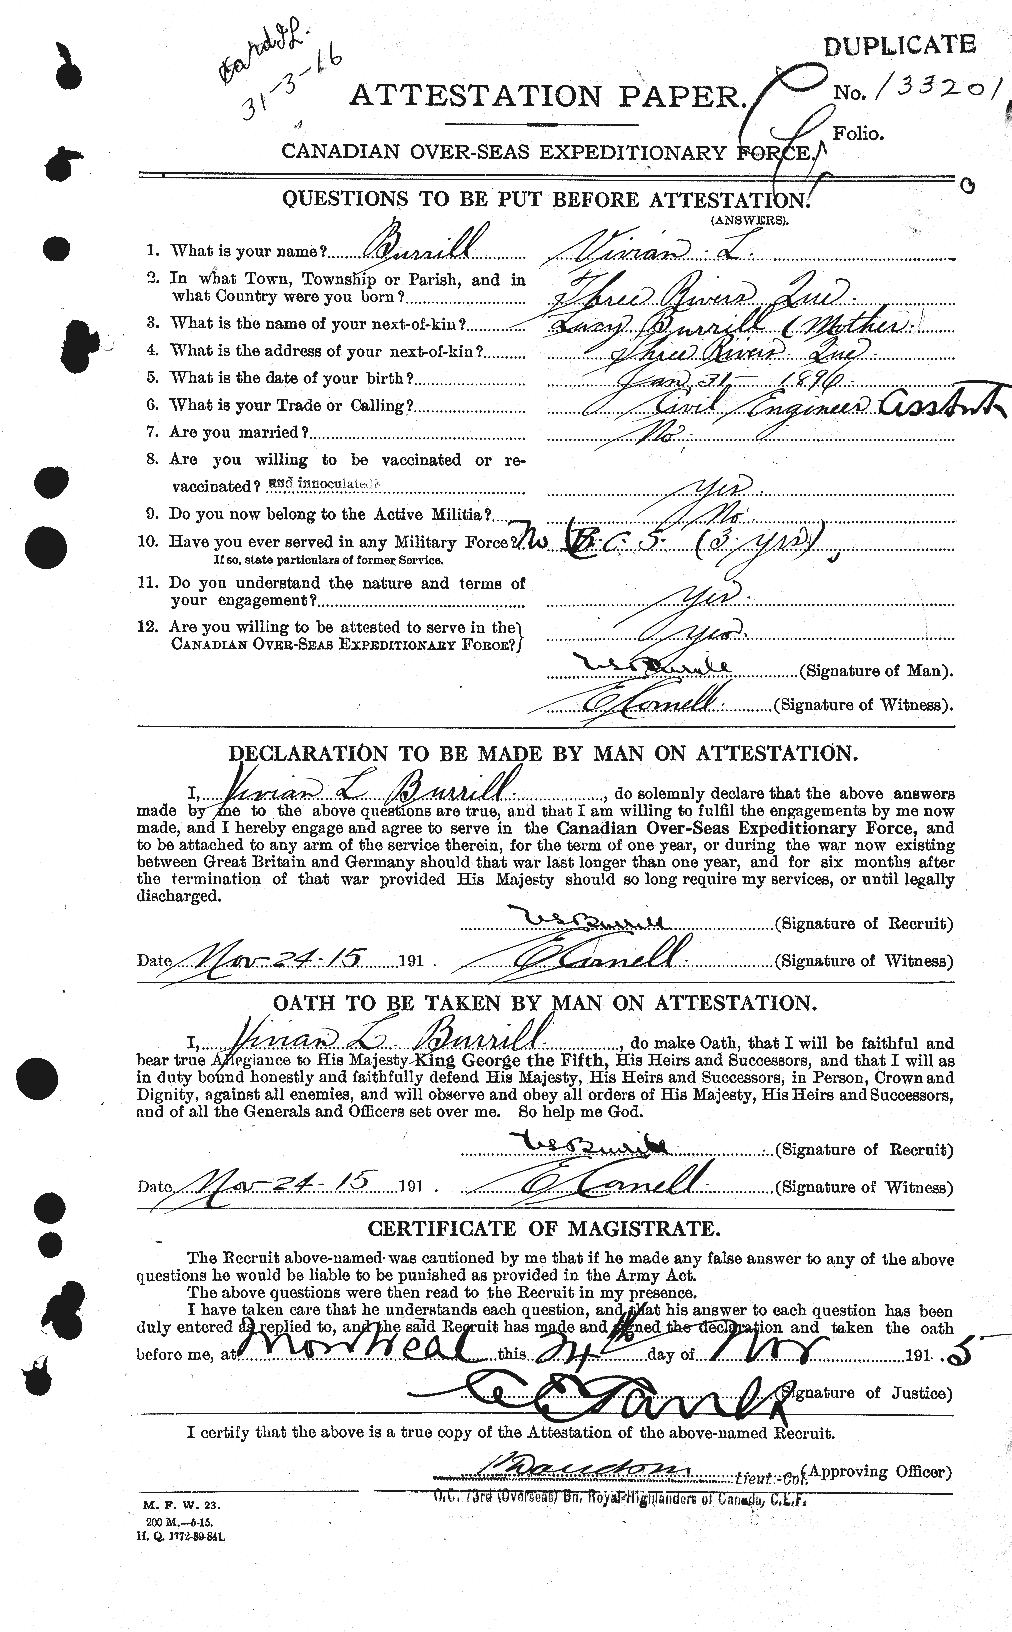 Dossiers du Personnel de la Première Guerre mondiale - CEC 274682a